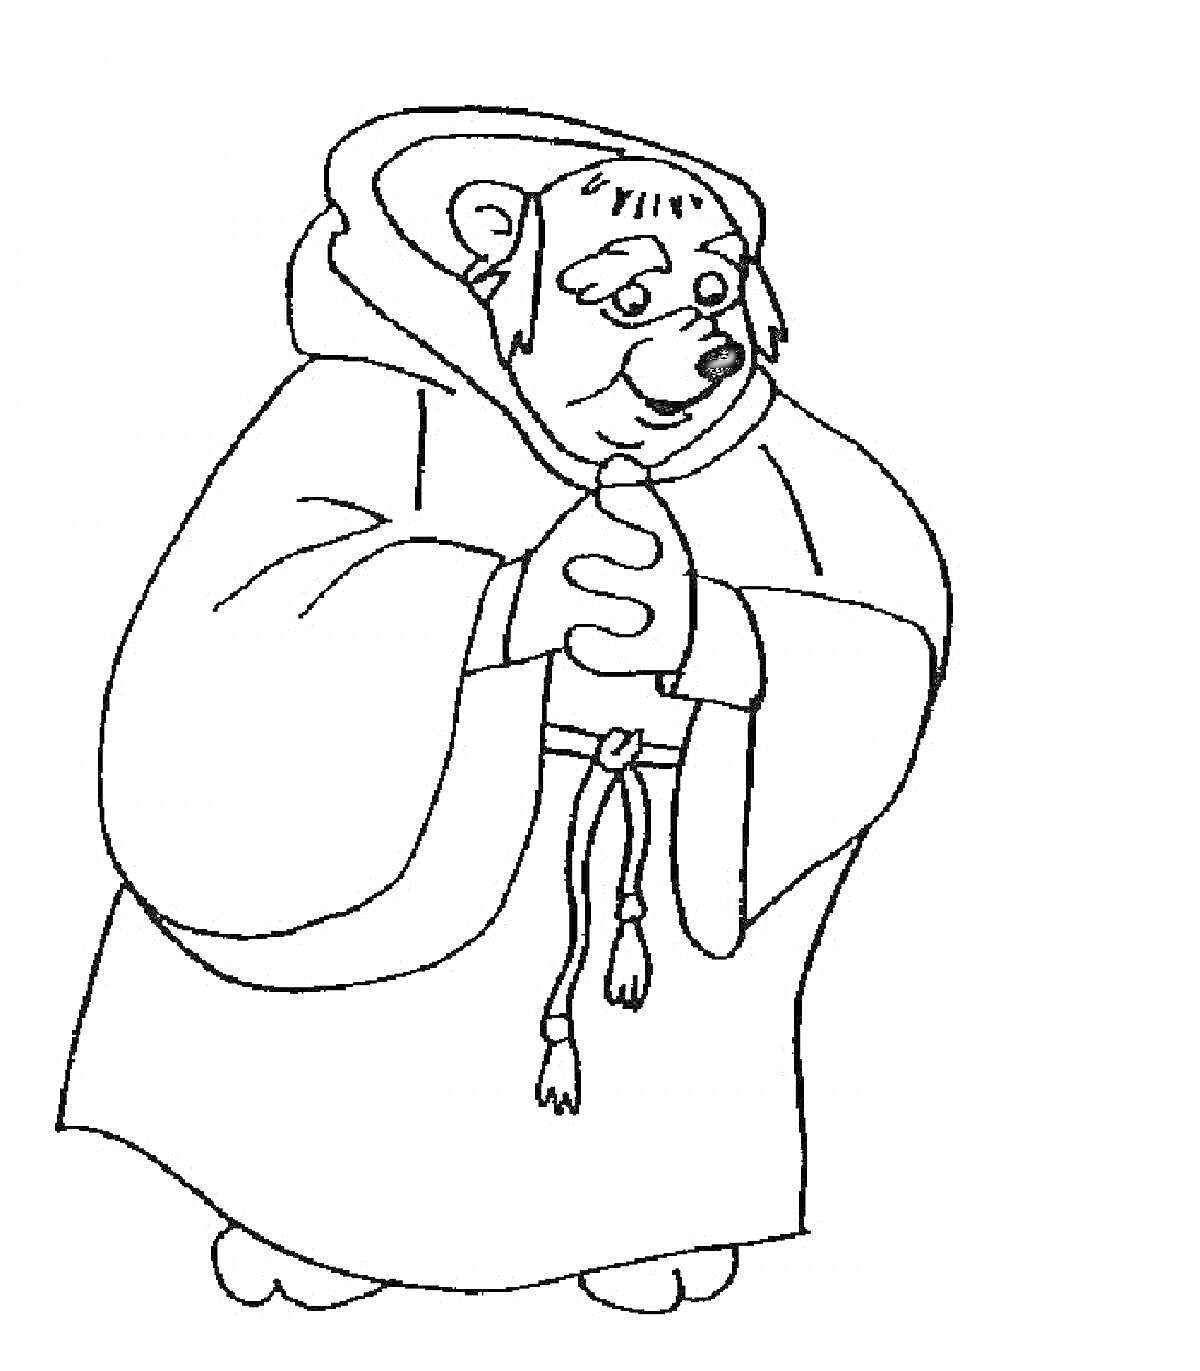 Раскраска Медведь в монашеском одеянии с капюшоном, с завязанным шнурком на талии, руки сложены, взгляд направлен вниз